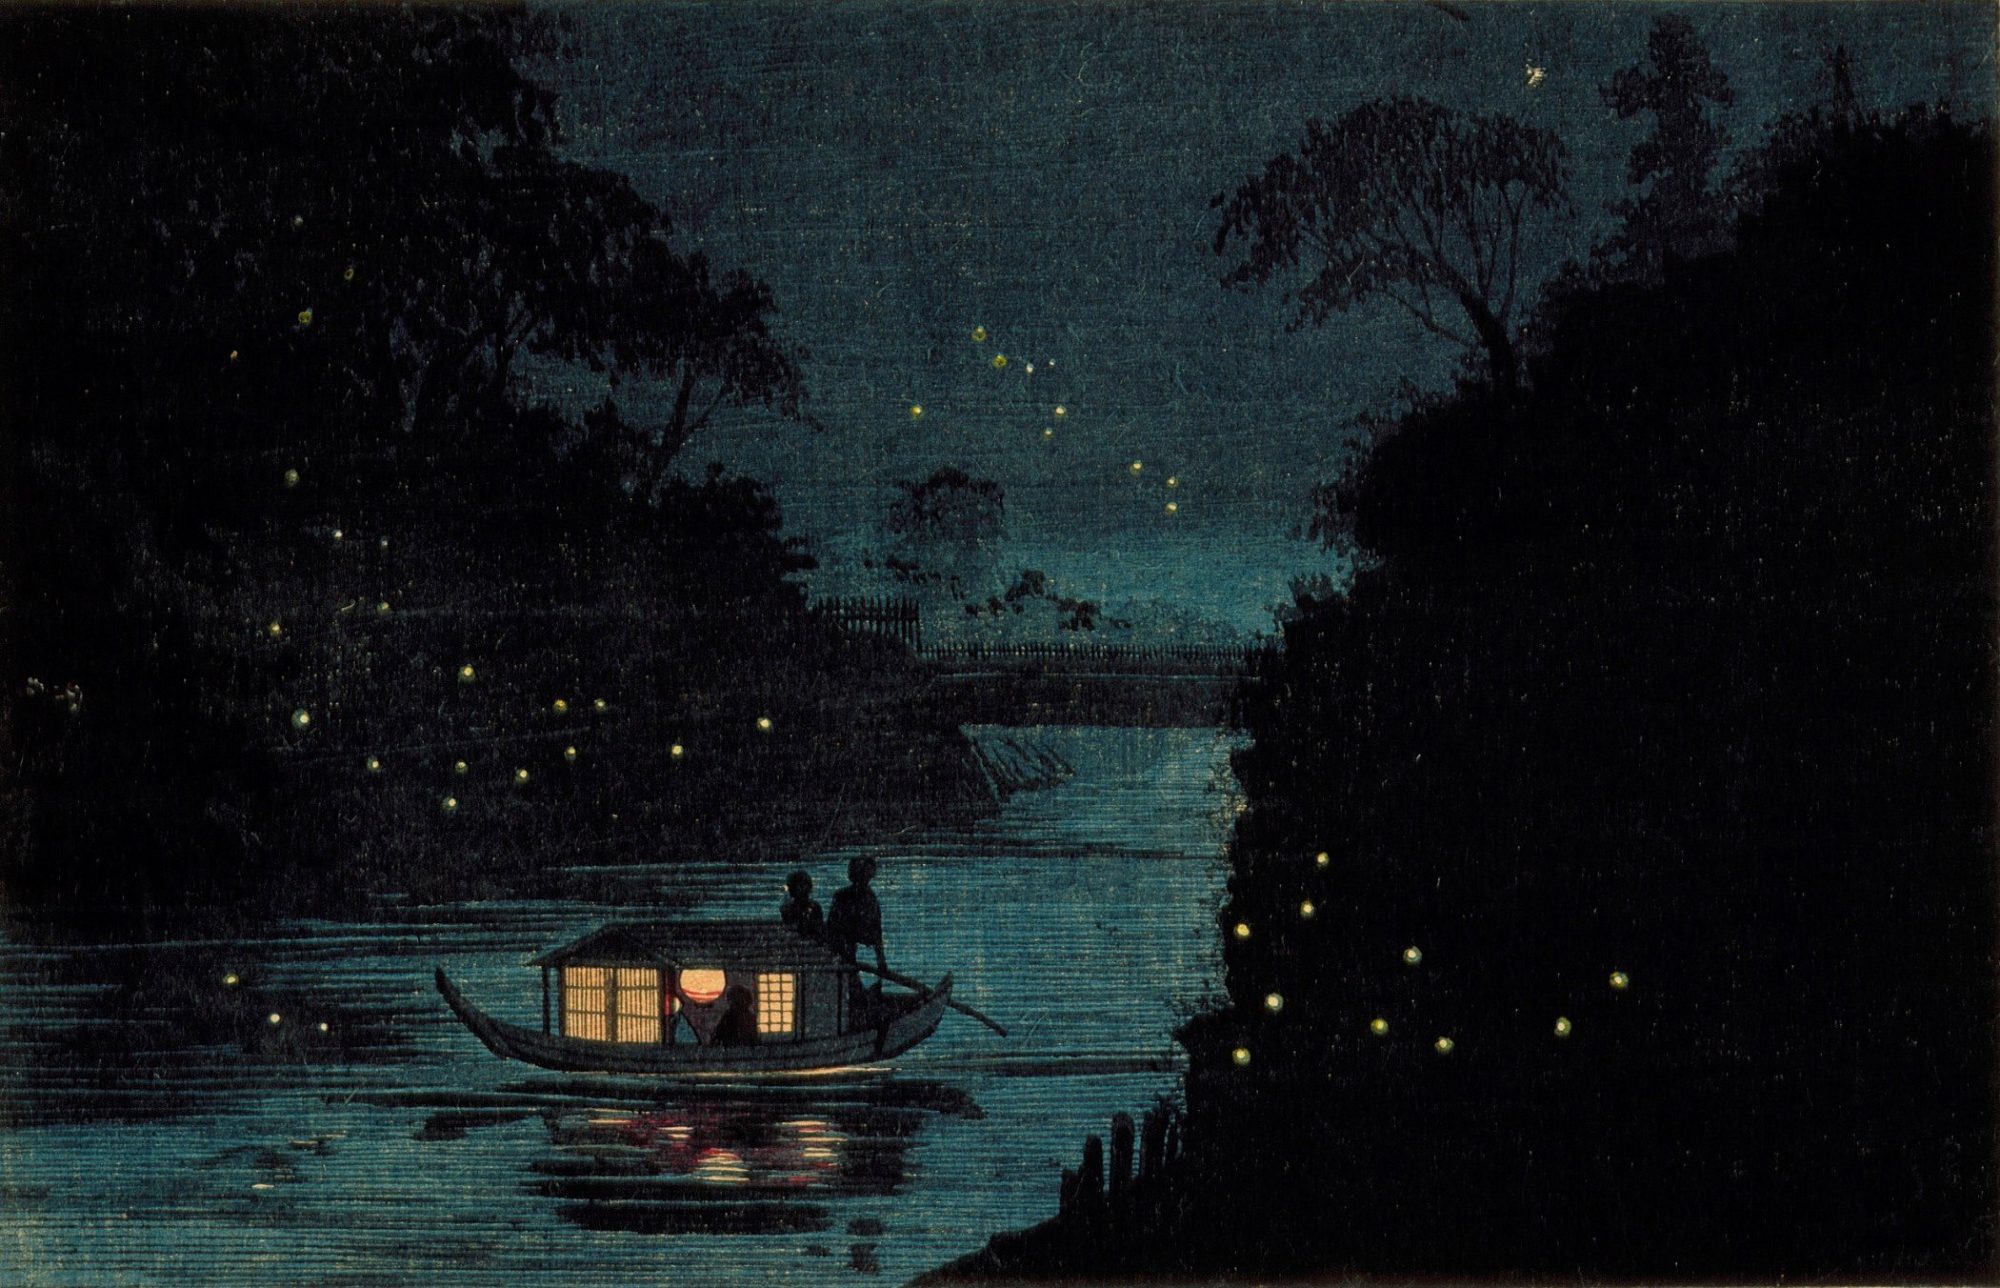 Noche en un río con el bote. Ilustración estampa japonesa ukiyo-e tradicional.